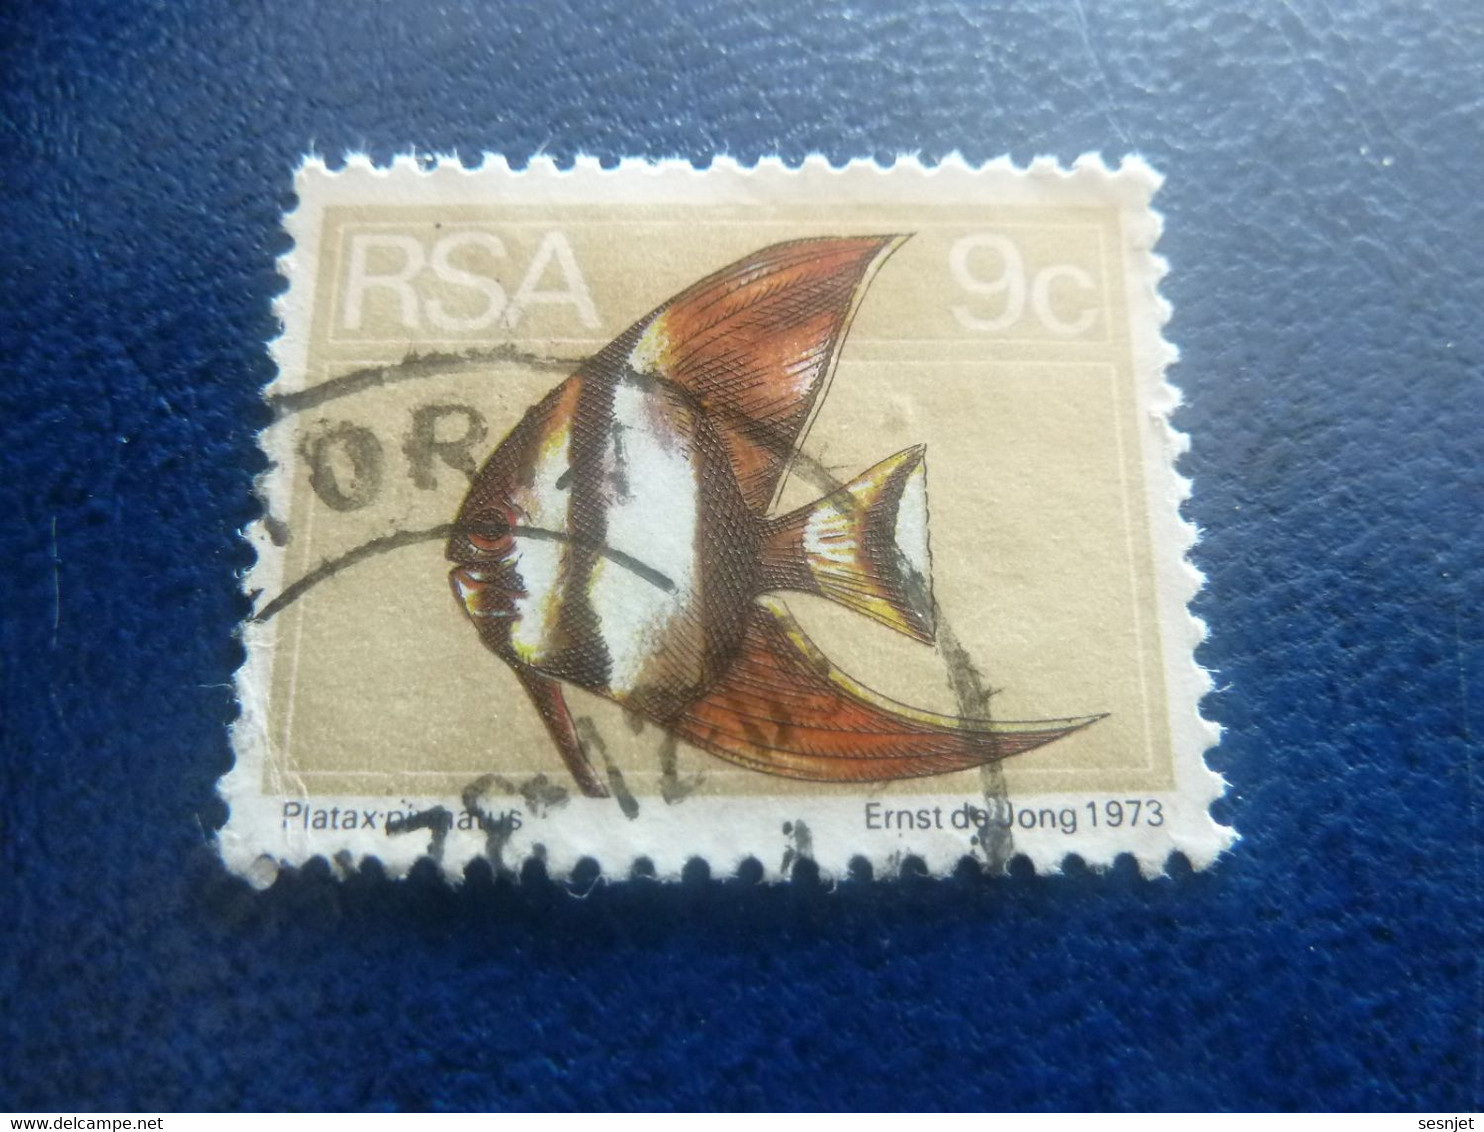 Rsa - Platax - Ernst De Jong - 9 C. - Multicolore - Oblitéré - Année 1973 - - Used Stamps